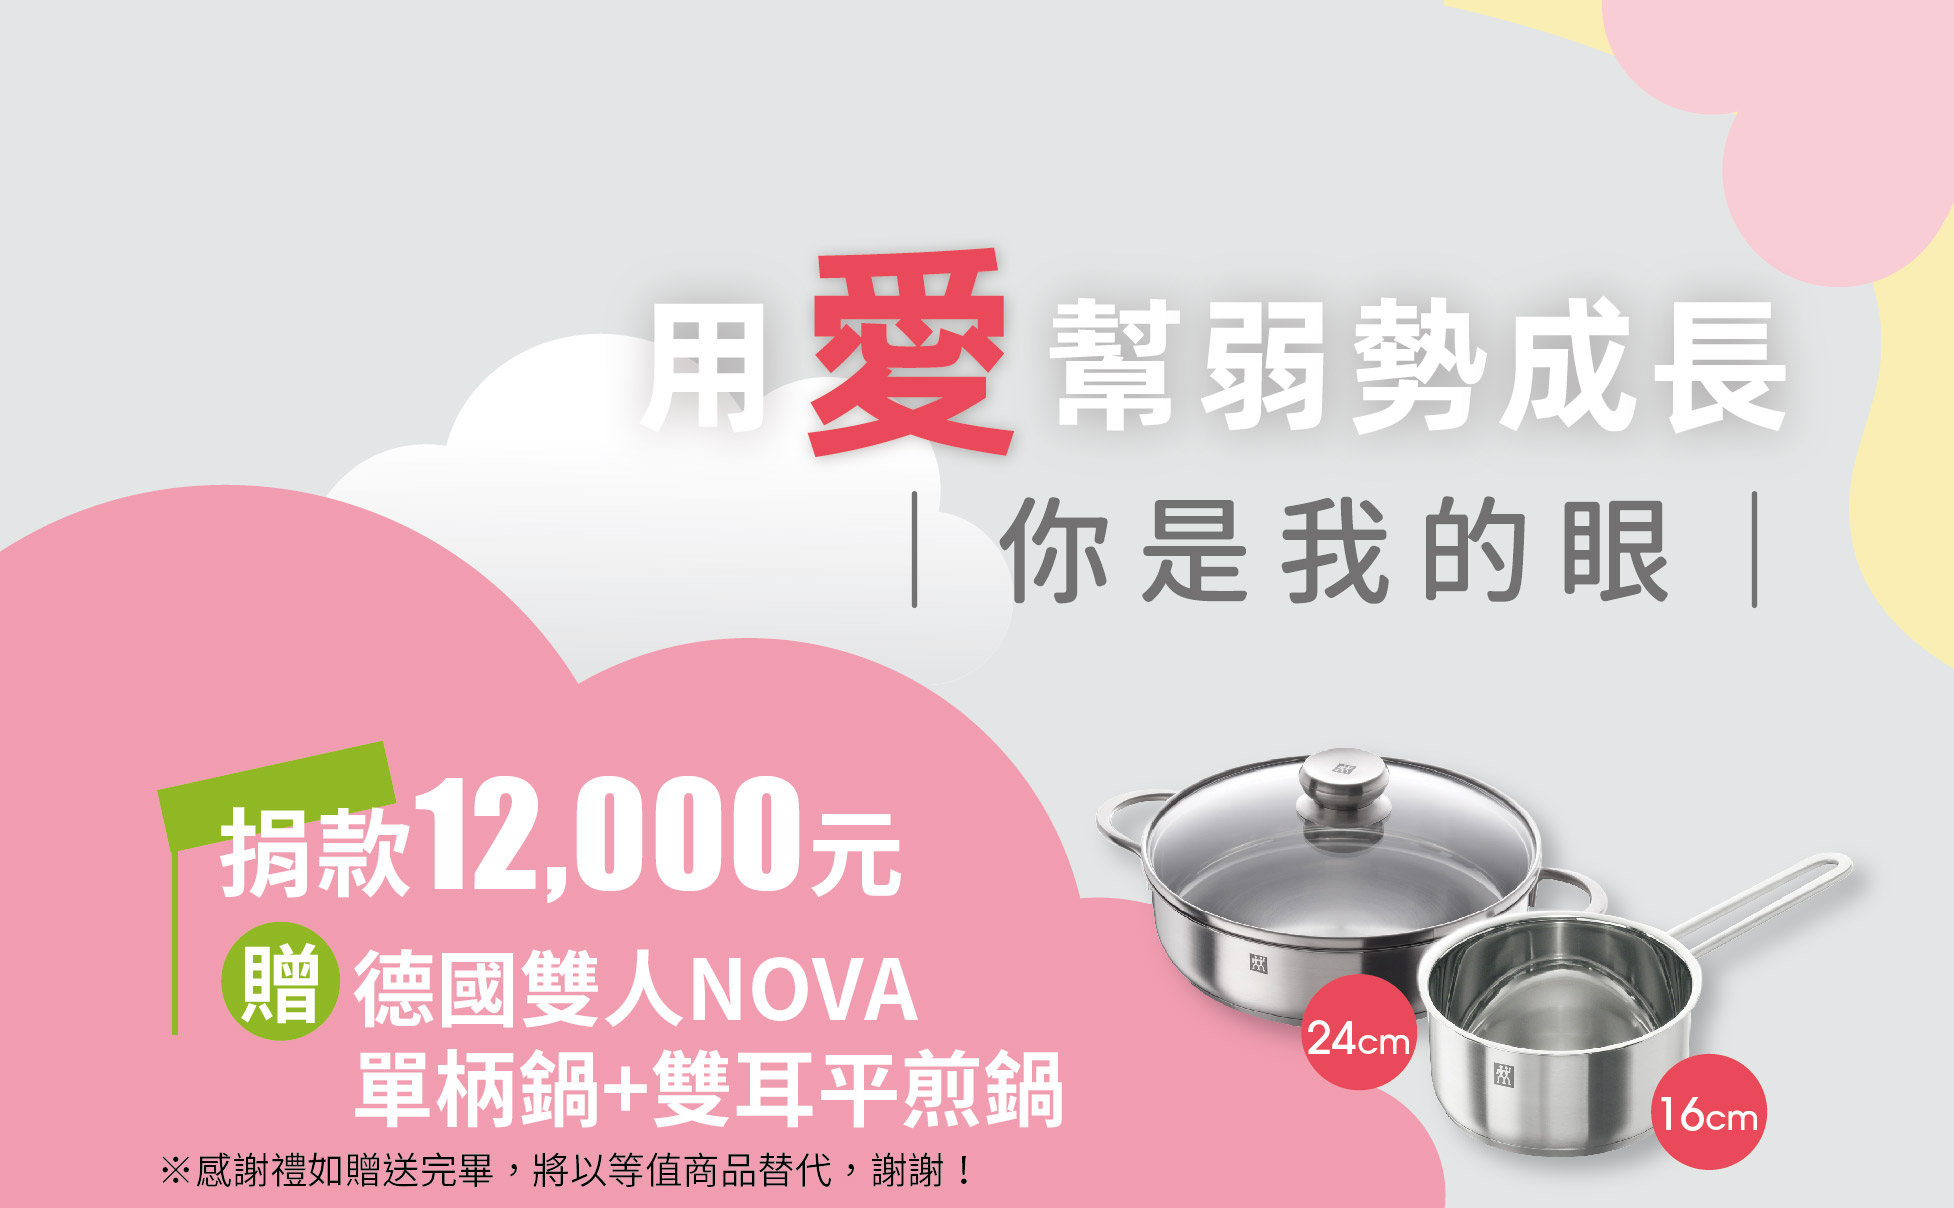 【你是我的眼】愛心捐款$12000 贈 德國雙人NOVA16cm 單柄鍋+24cm雙耳平煎鍋